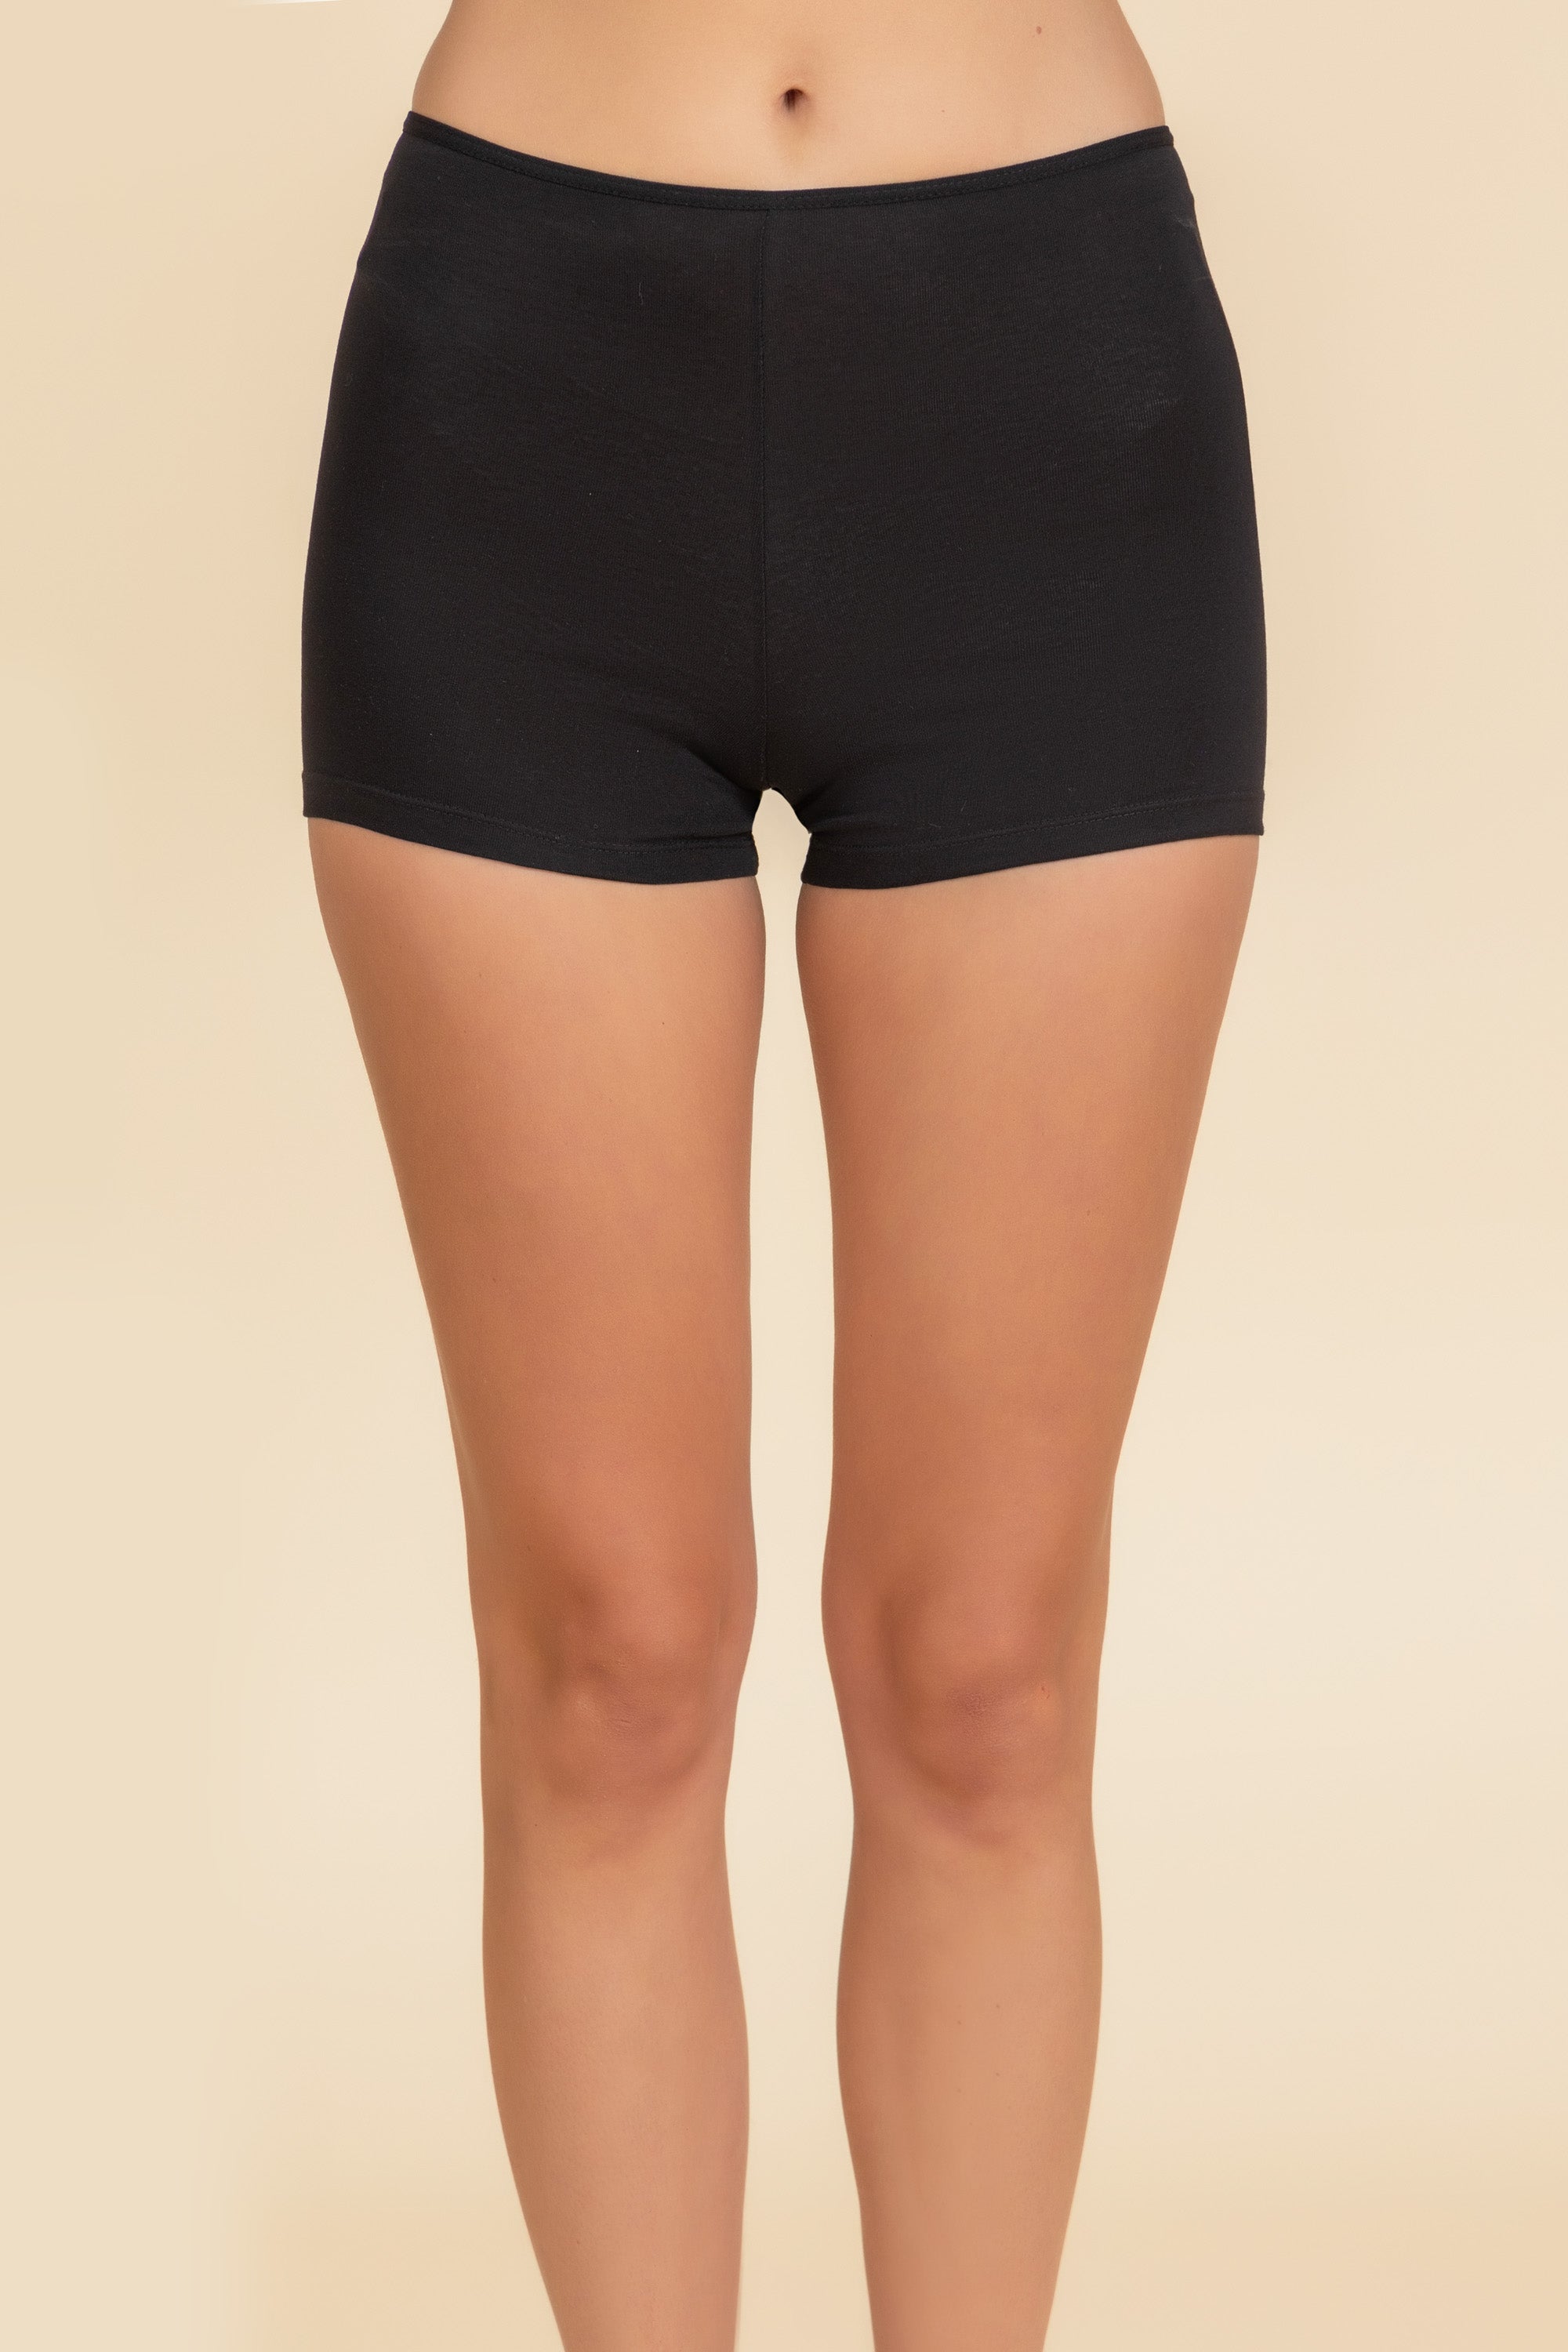 Women's Boxer Shorts Underwear